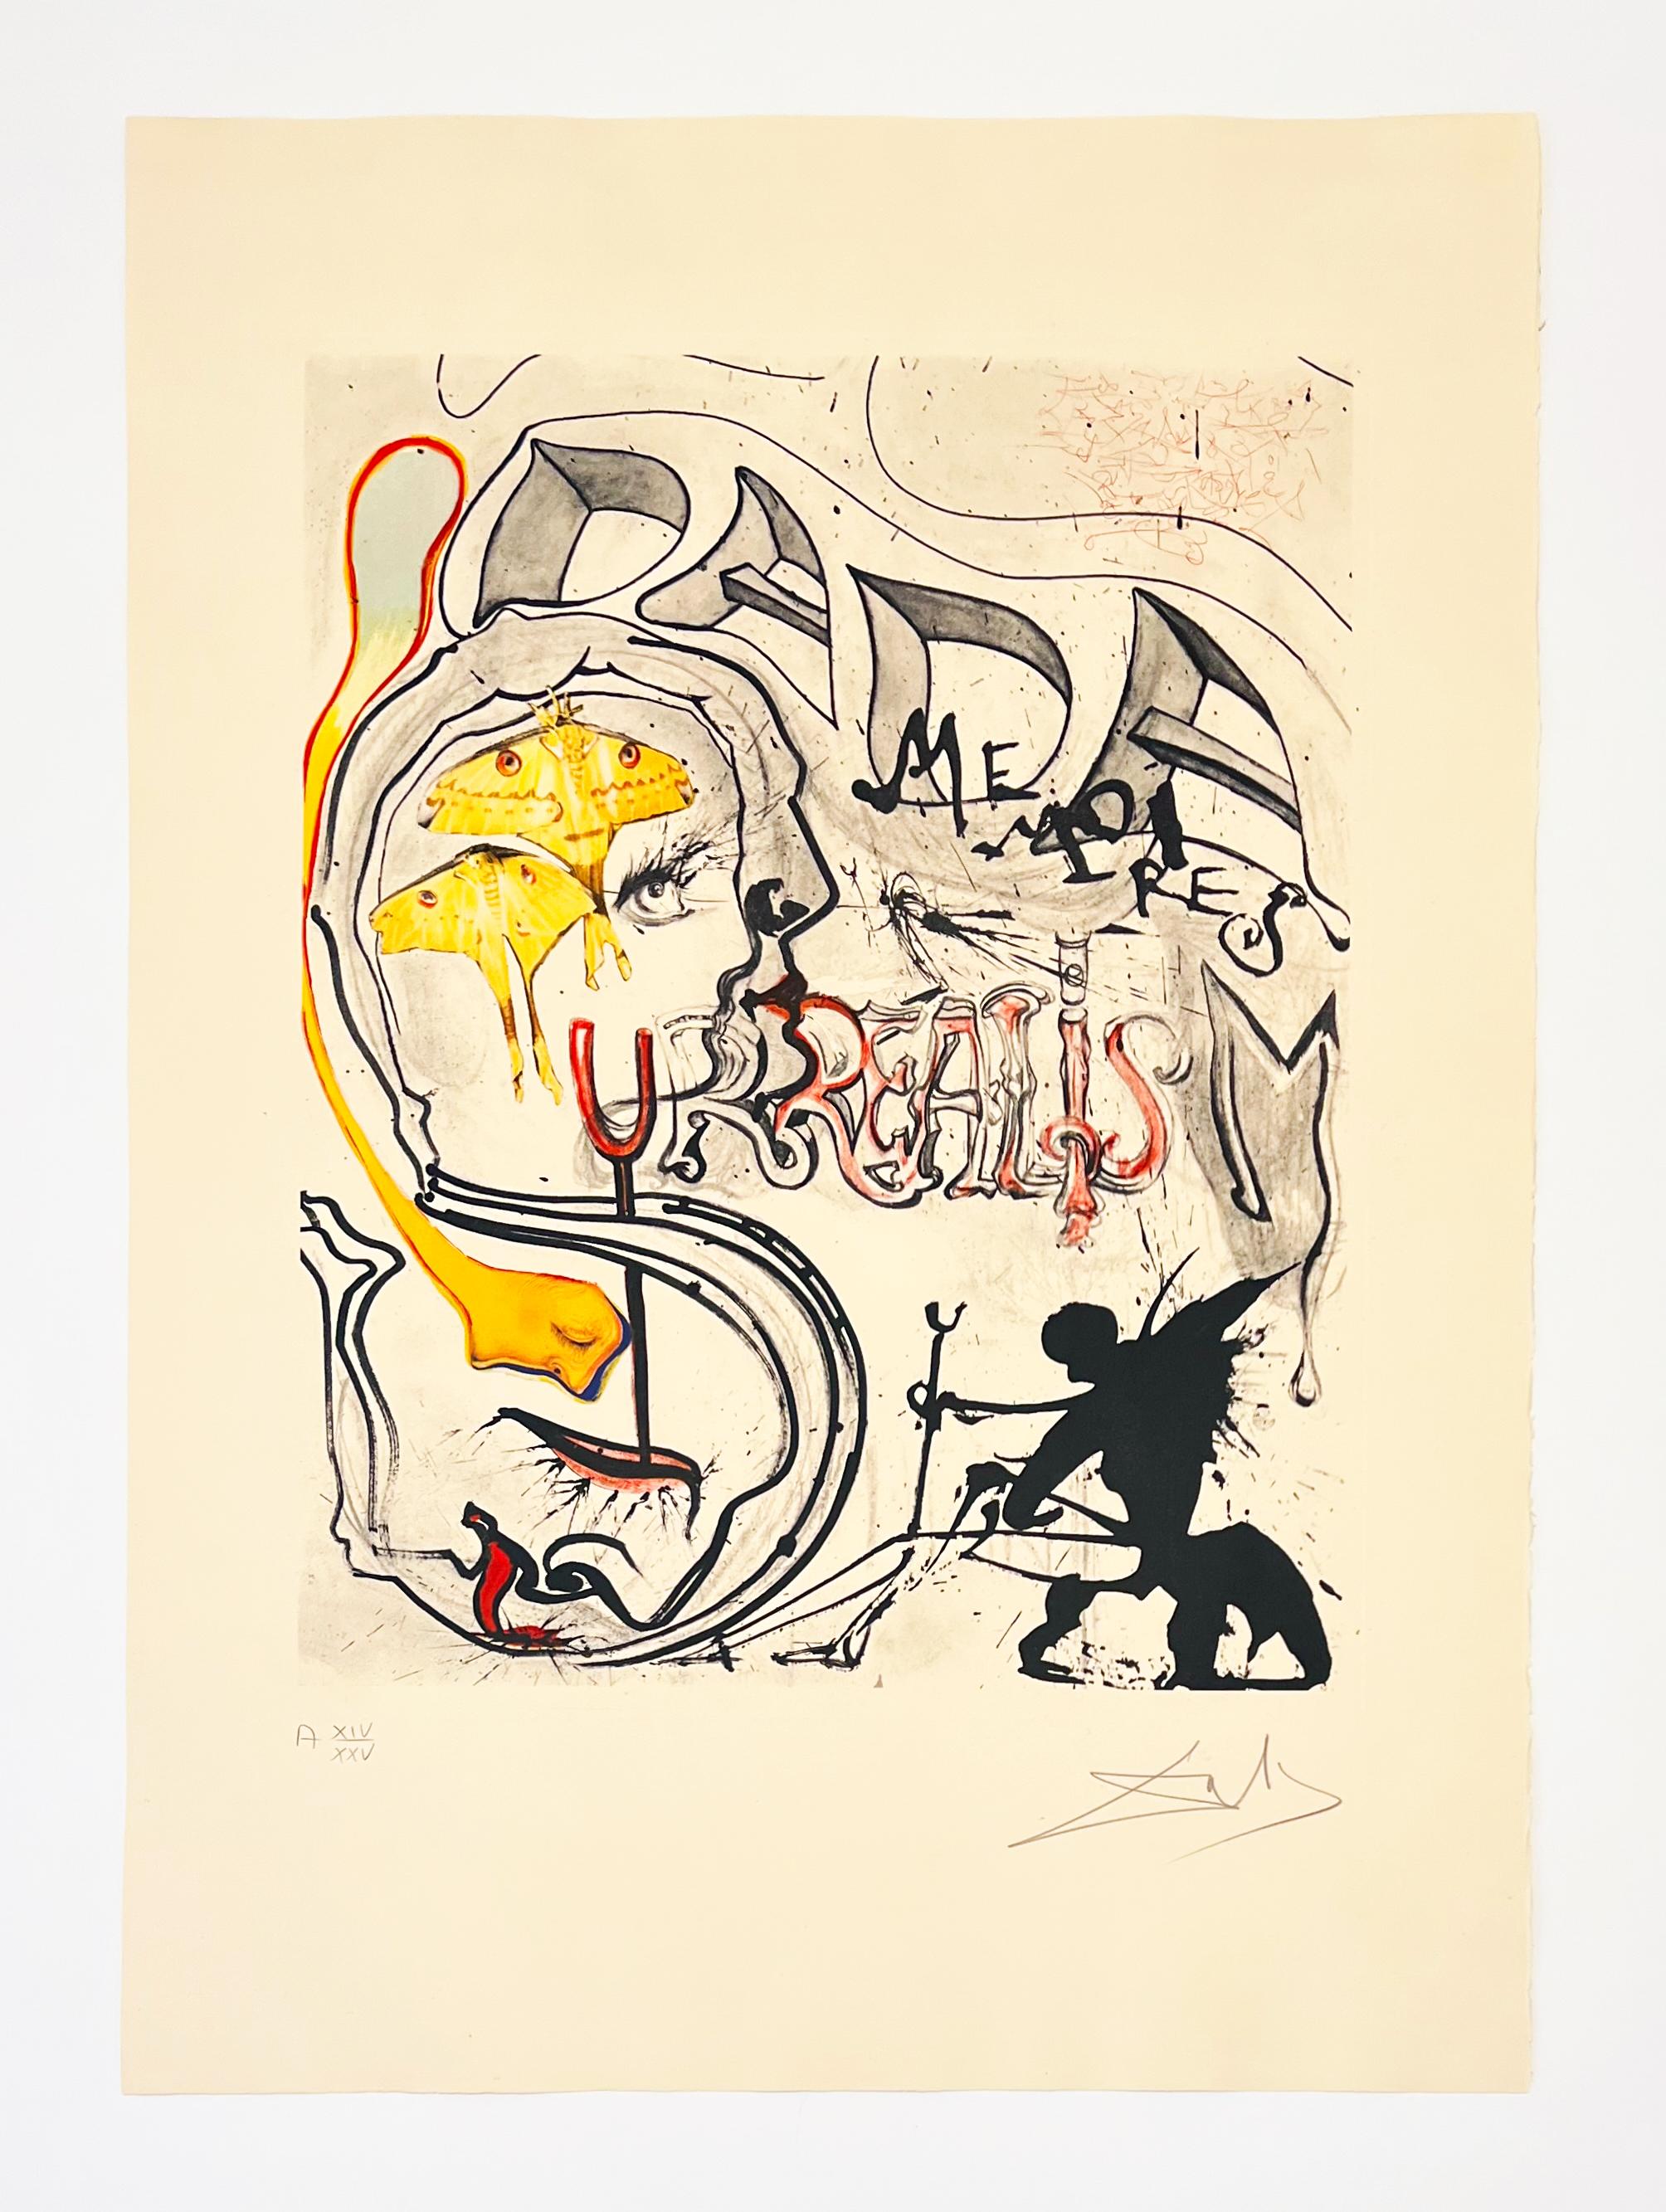 Angel of Dada Surréalisme, de 1971 Mémoires du surréalisme - Print de Salvador Dalí